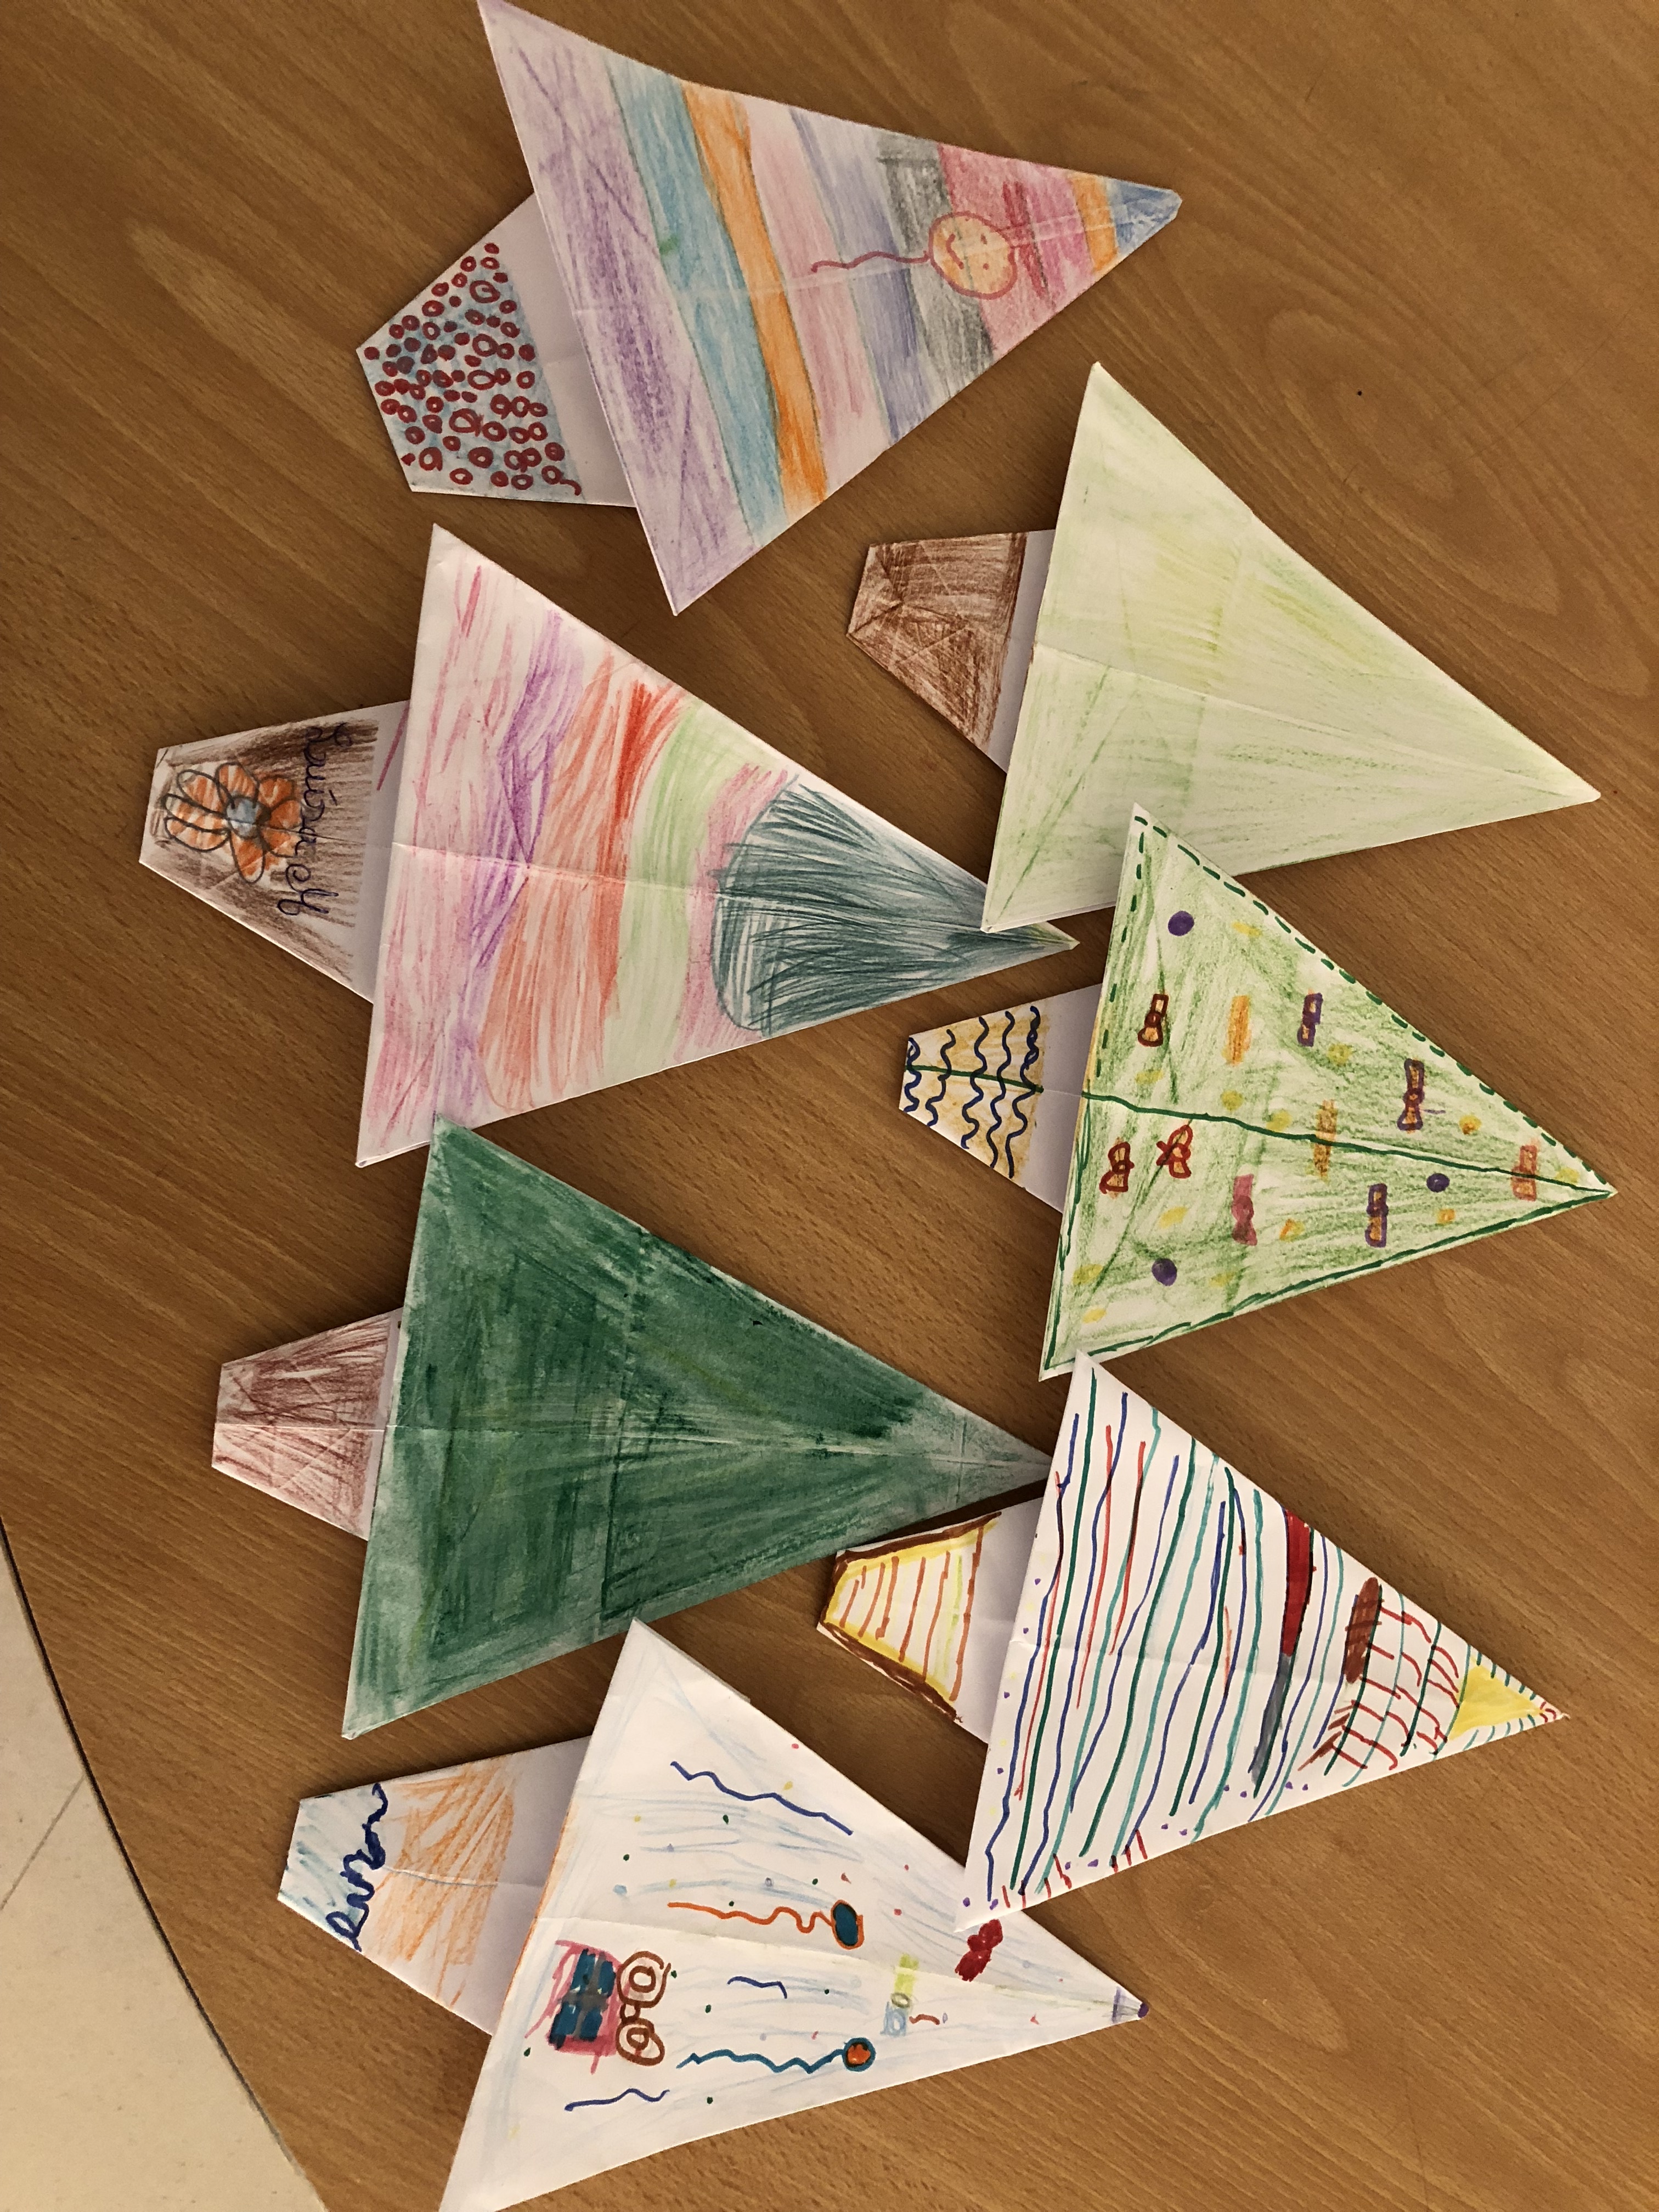 Painel da exposição das árvores origami